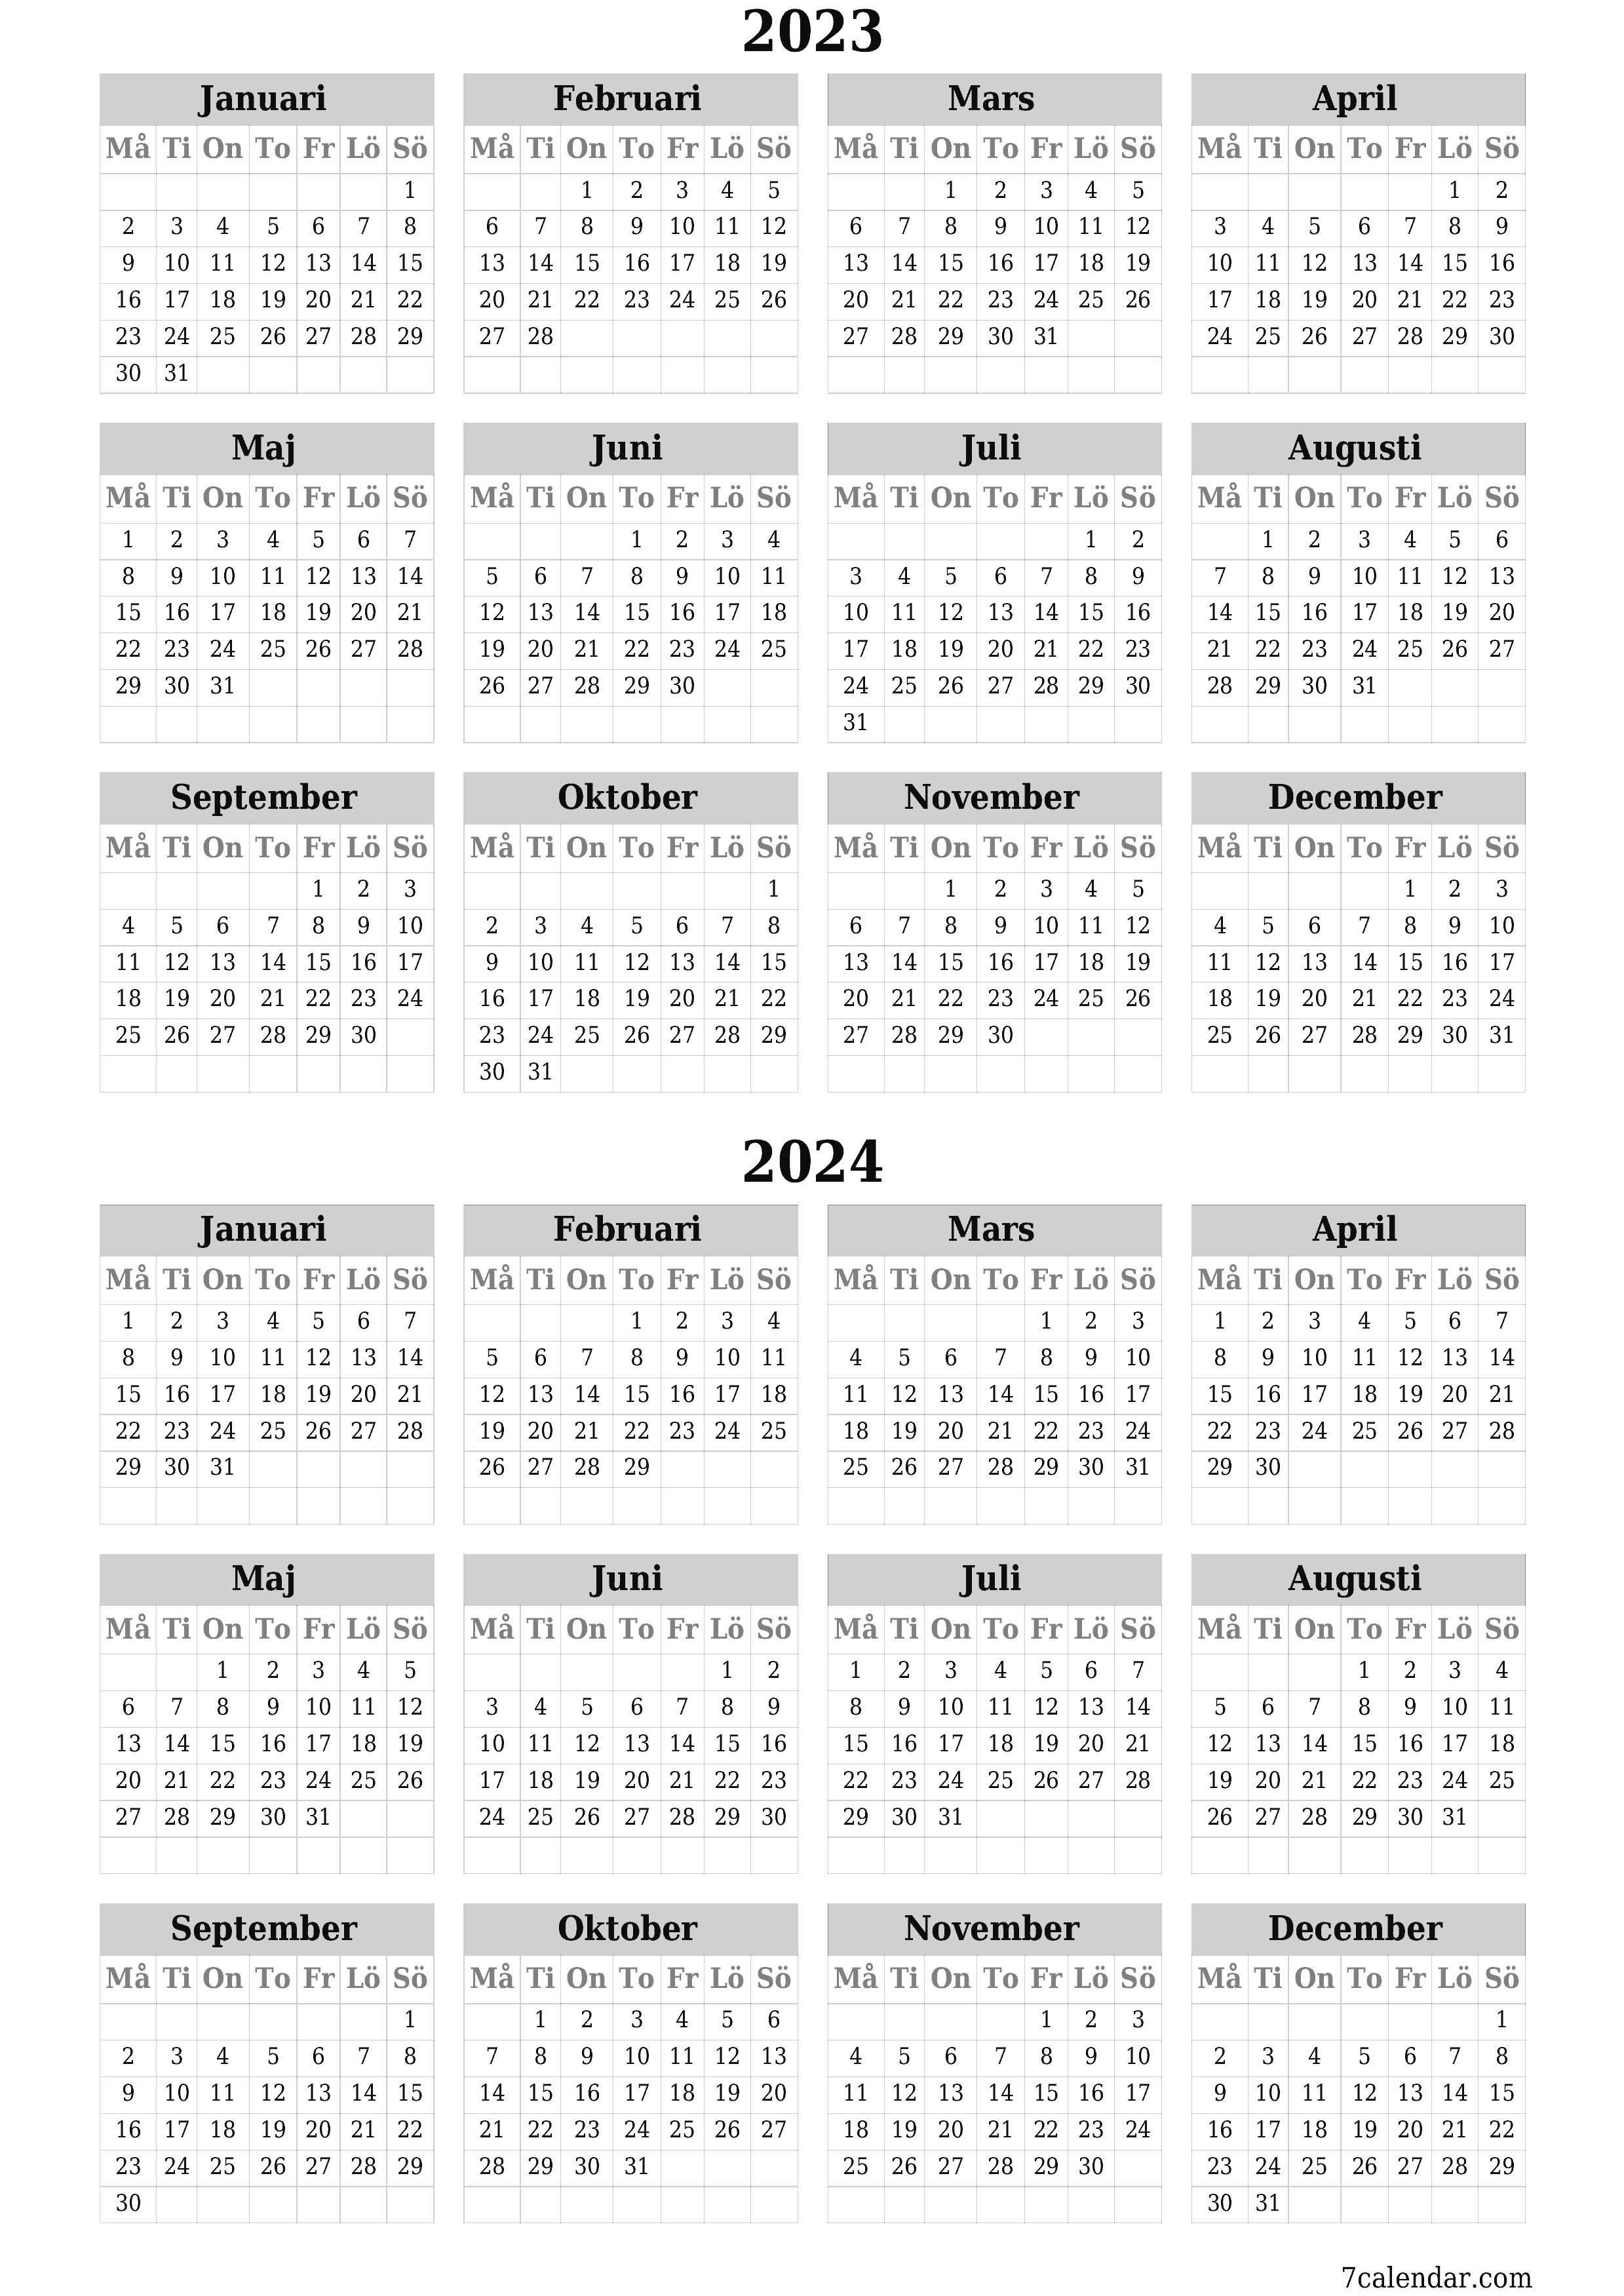 Tom årskalender för år 2023, 2024 spara och skriv ut till PDF PNG Swedish - 7calendar.com